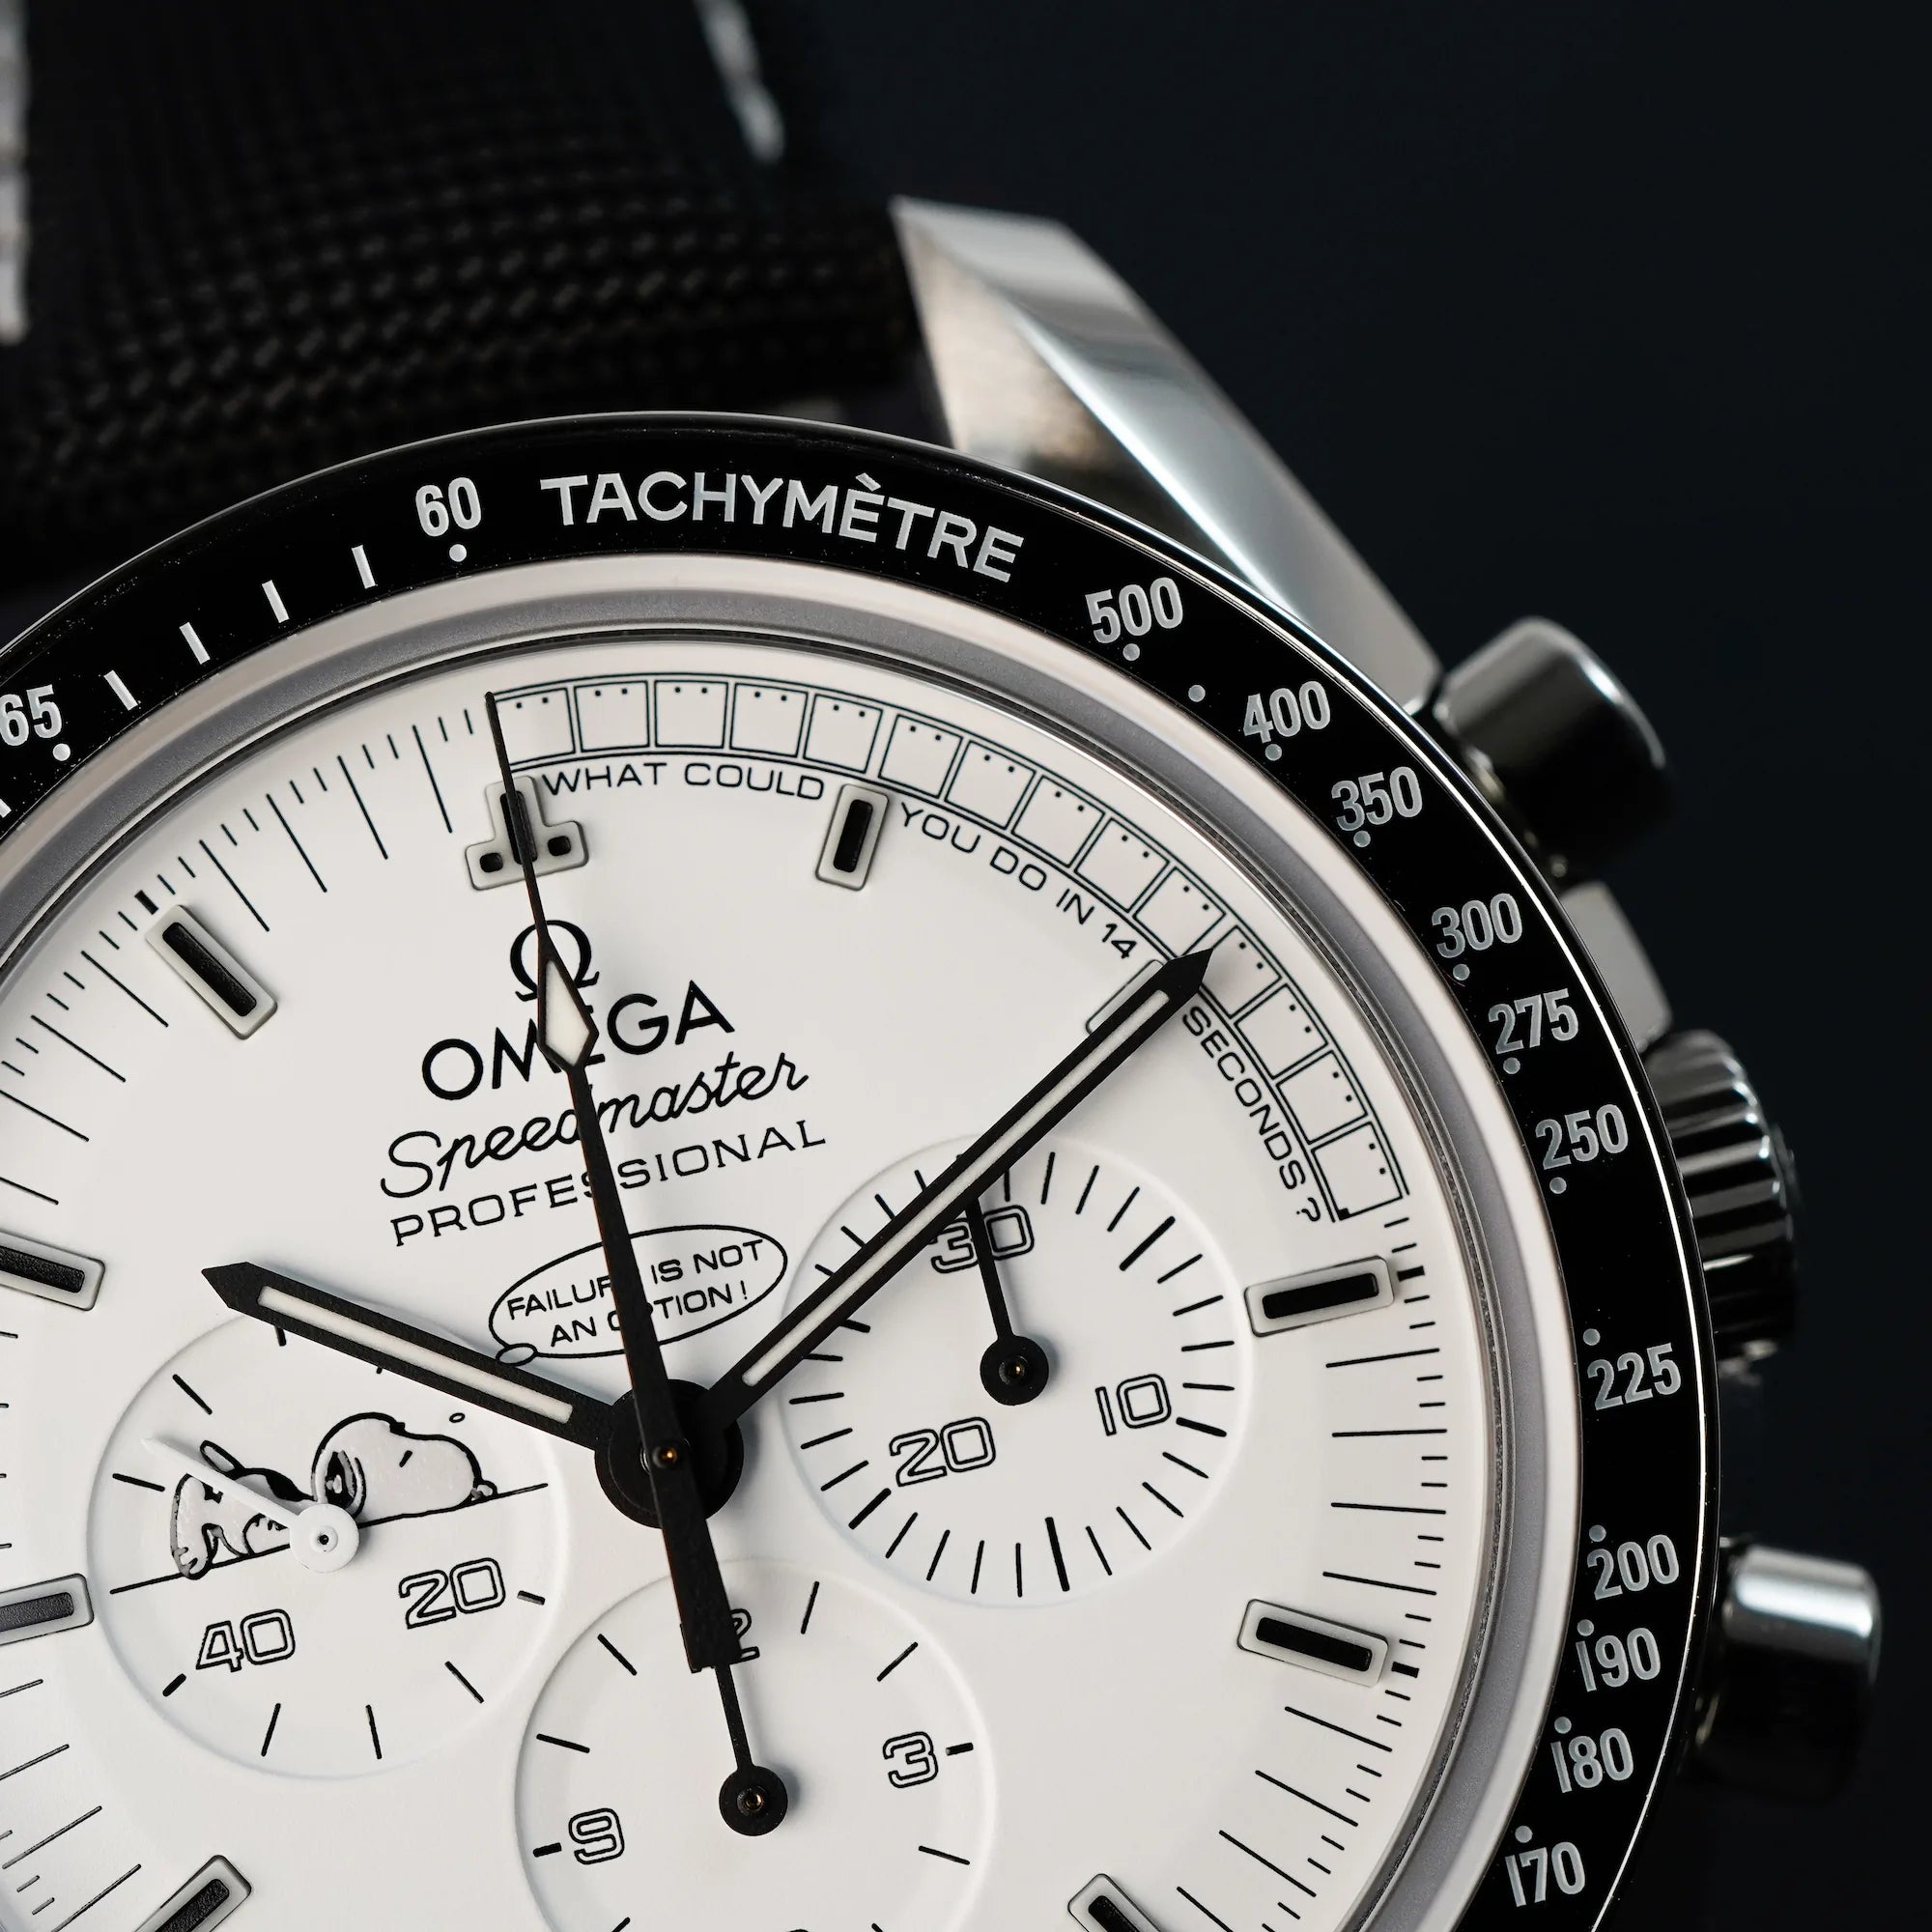 Makroaufnahme des weißen Zifferblatts und der Tachymetre-Skala der limitierten Omega Speedmaster Moonwatch Silver Snoopy mit dem weißen Zifferblatt